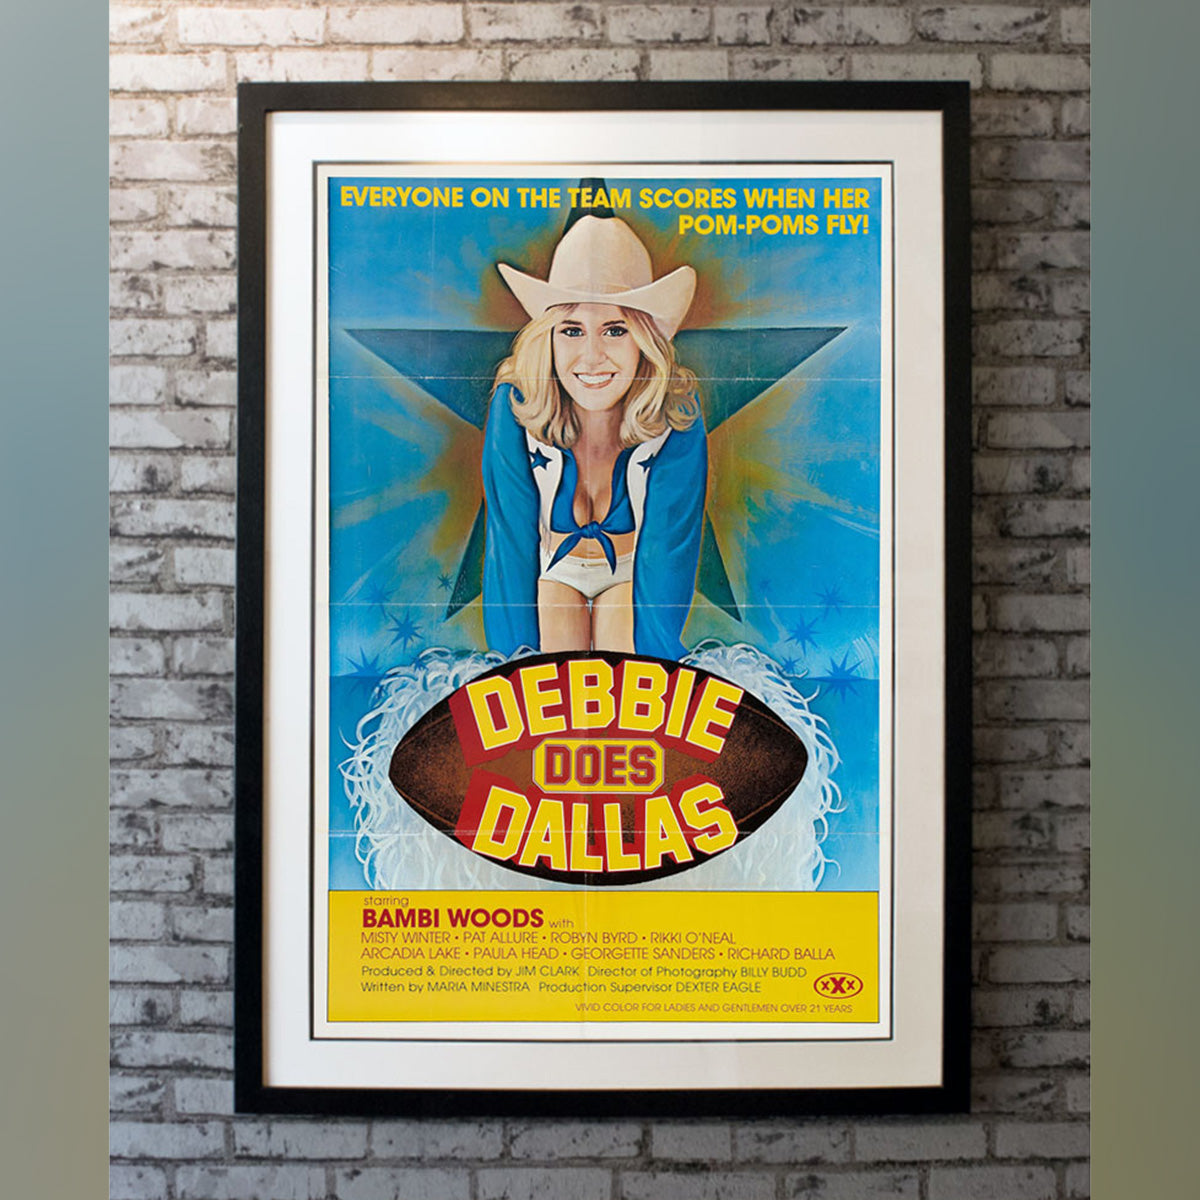 Original Movie Poster of Debbie Does Dallas (1978)